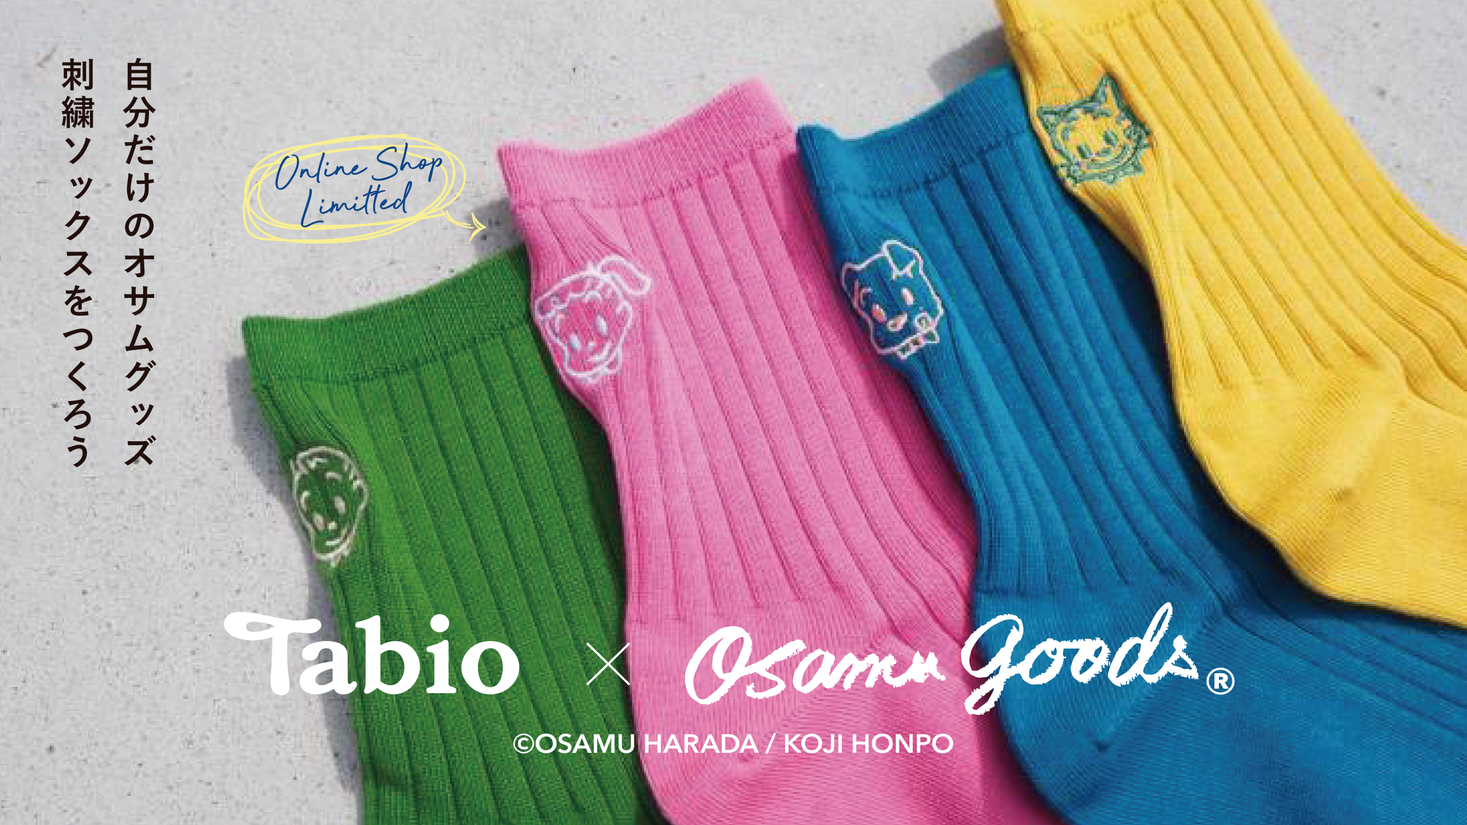 組み合わせは1 000通り以上 大好評の Tabio Osamu Goods コラボからイラスト刺繍 サービスがスタート タビオ株式会社のプレスリリース